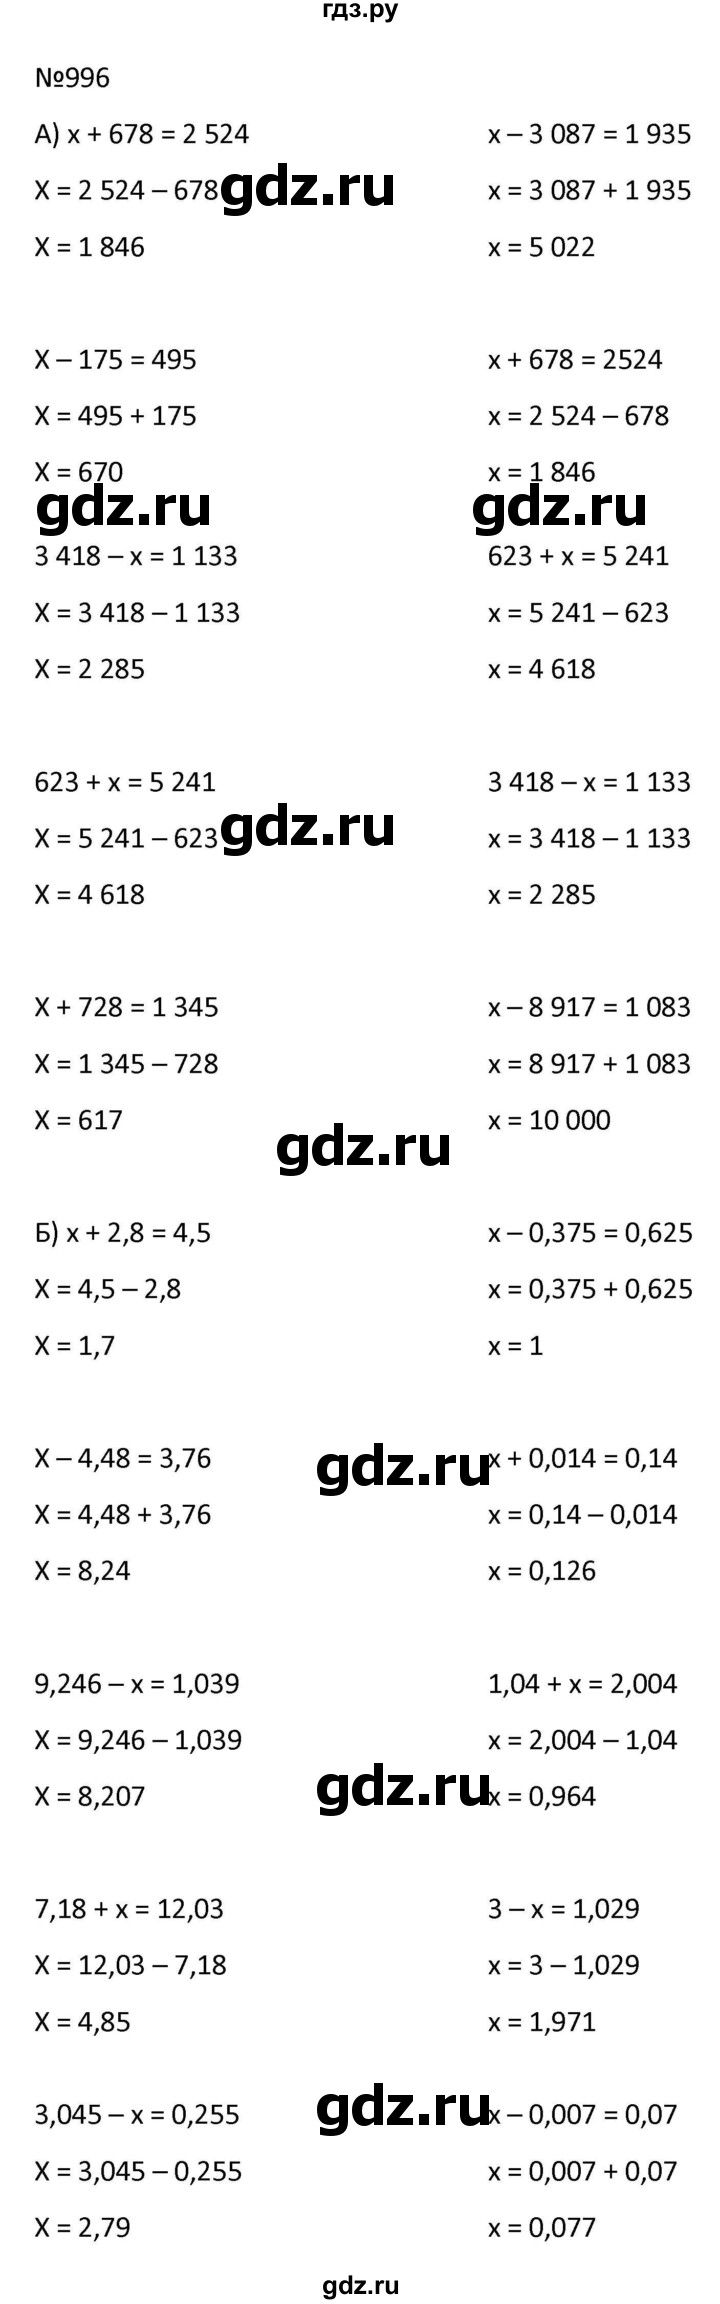 ГДЗ по математике 9 класс Антропов  Для обучающихся с интеллектуальными нарушениями номер - 996, Решебник